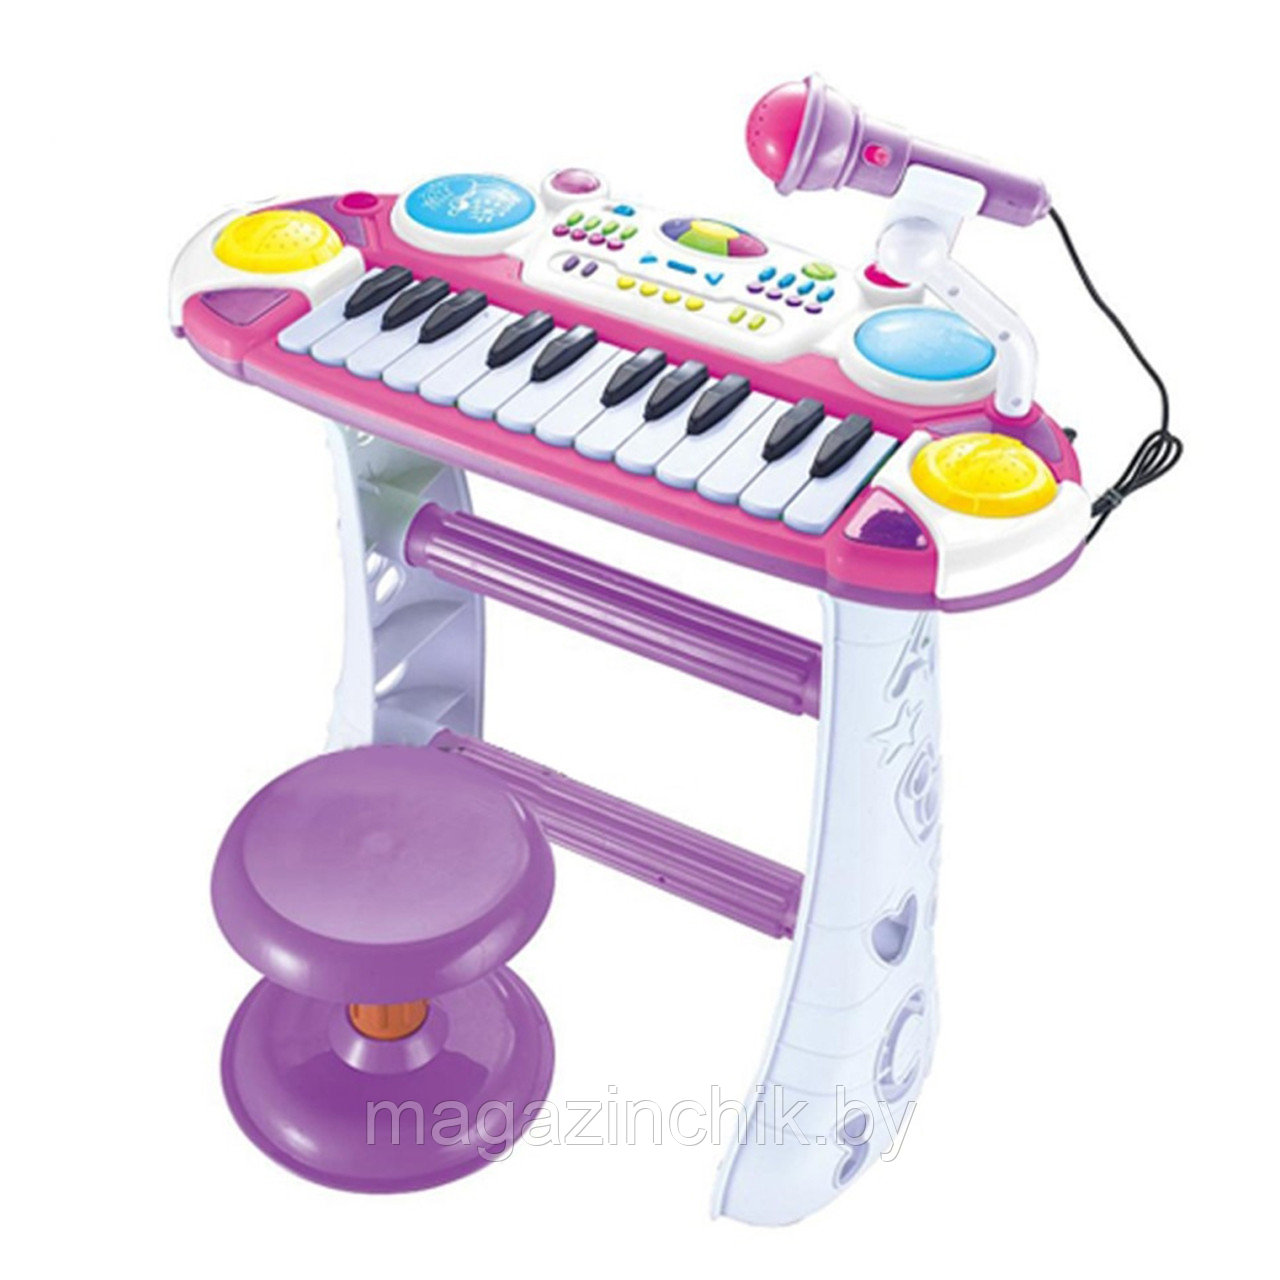 Детский синтезатор (пианино) BB335BD с микрофоном, стульчиком, светом и звуком, сиреневый